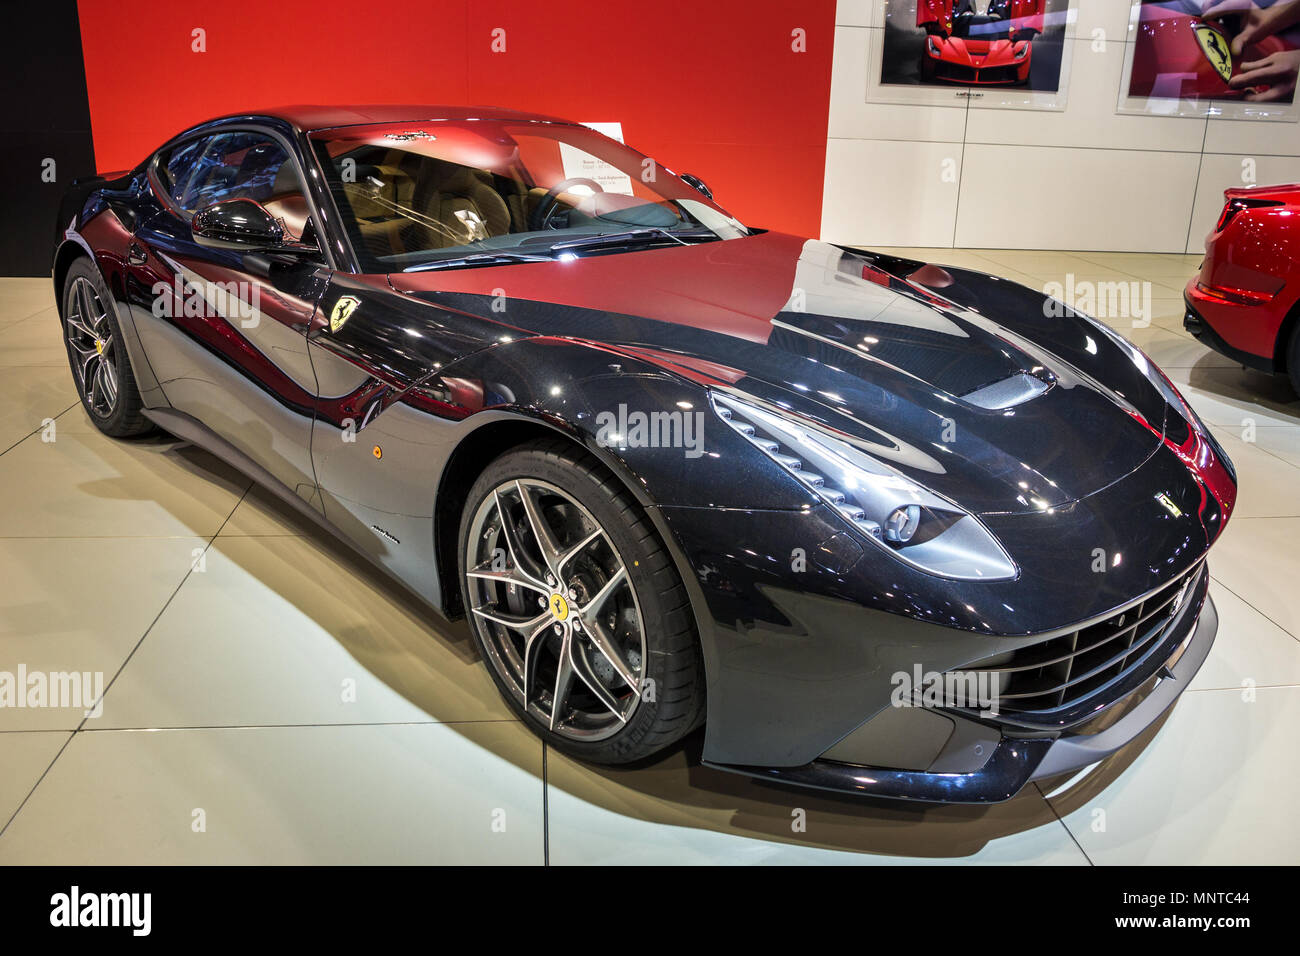 Bruxelles - Jan 12, 2016: Ferrari F12 la berlinetta auto sportiva presentati presso il Bruxelles Motor Show. Foto Stock